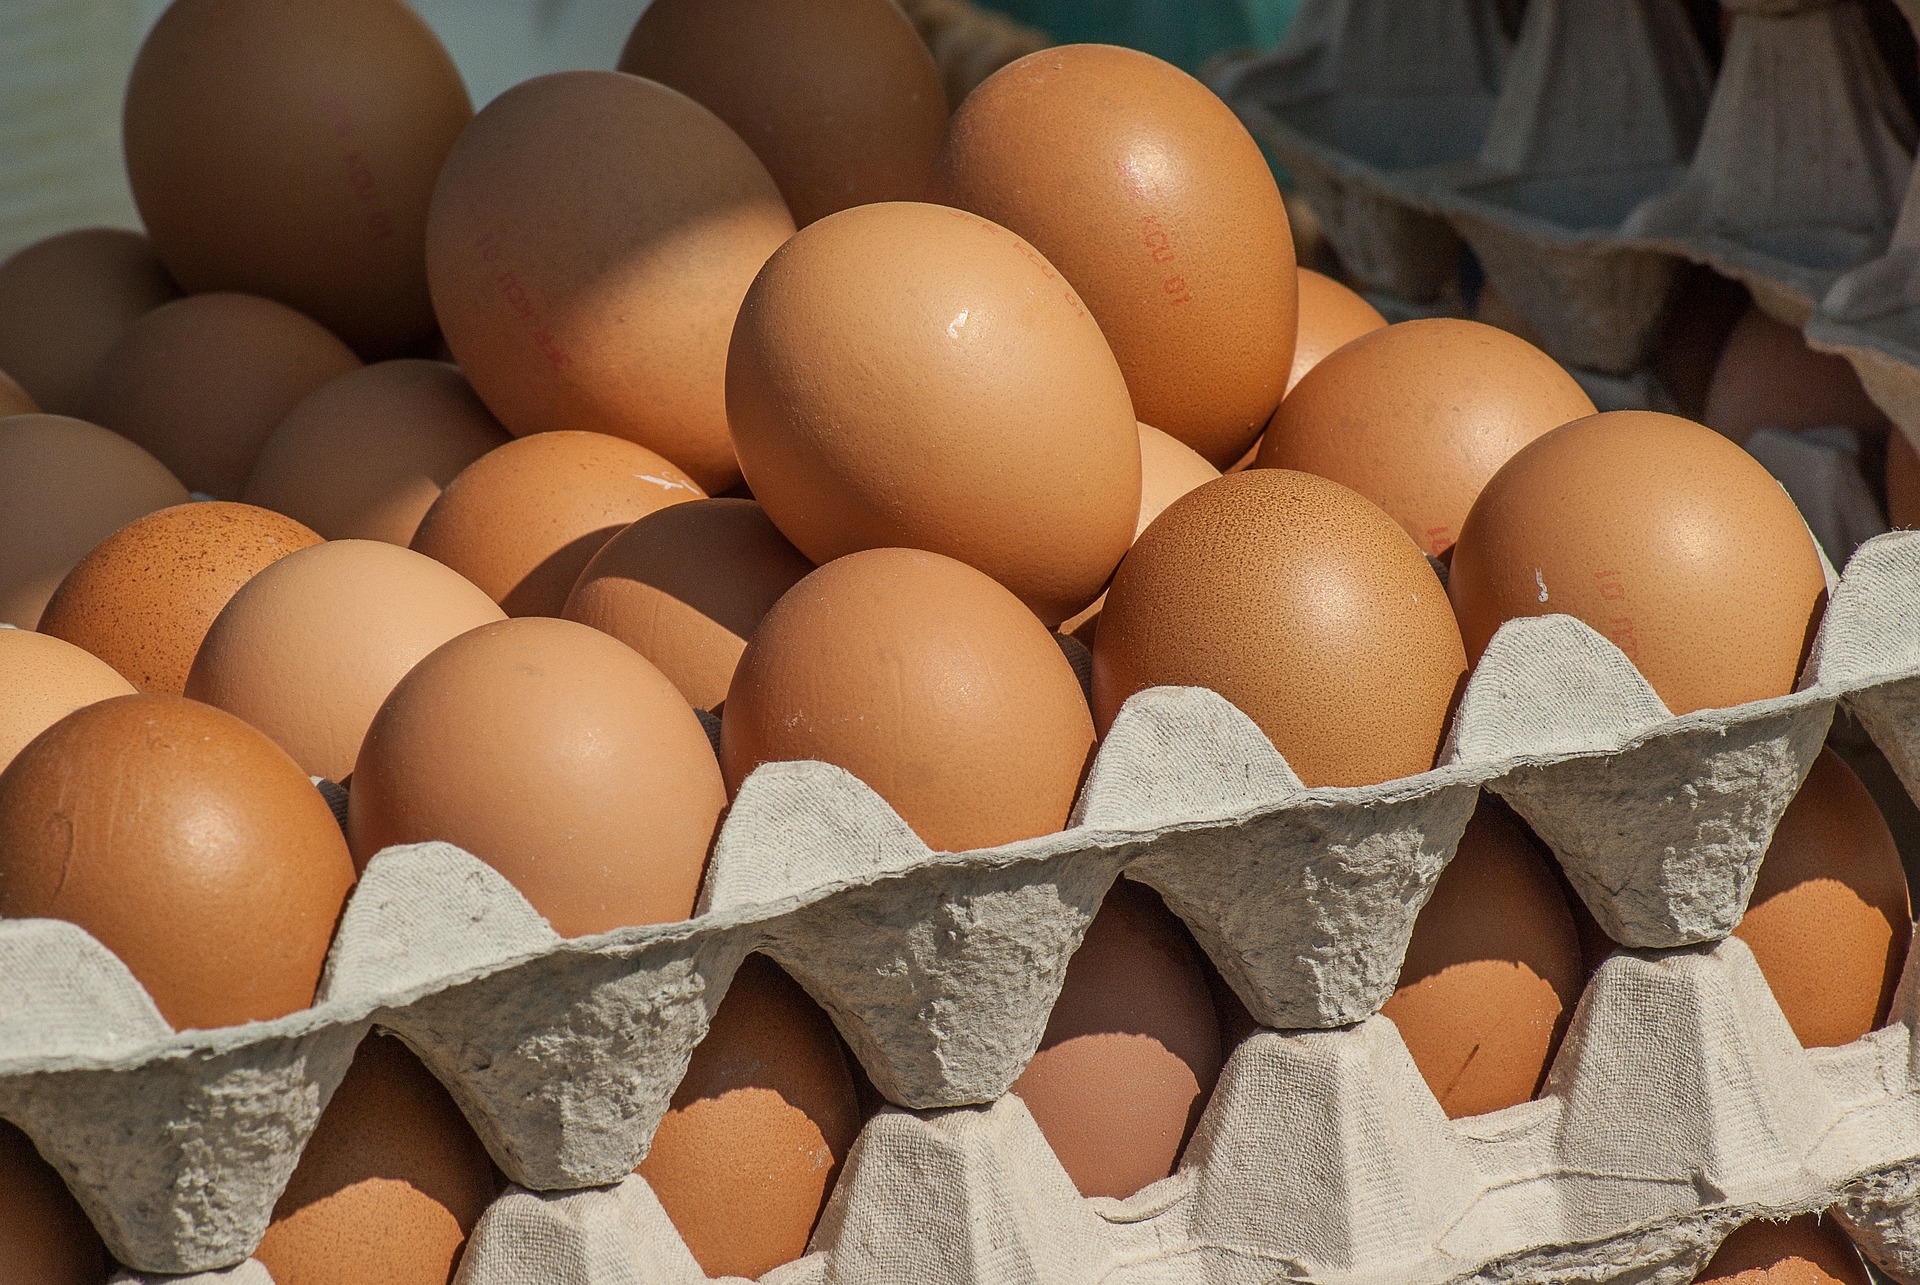 Читинские яйца дешевле привозных